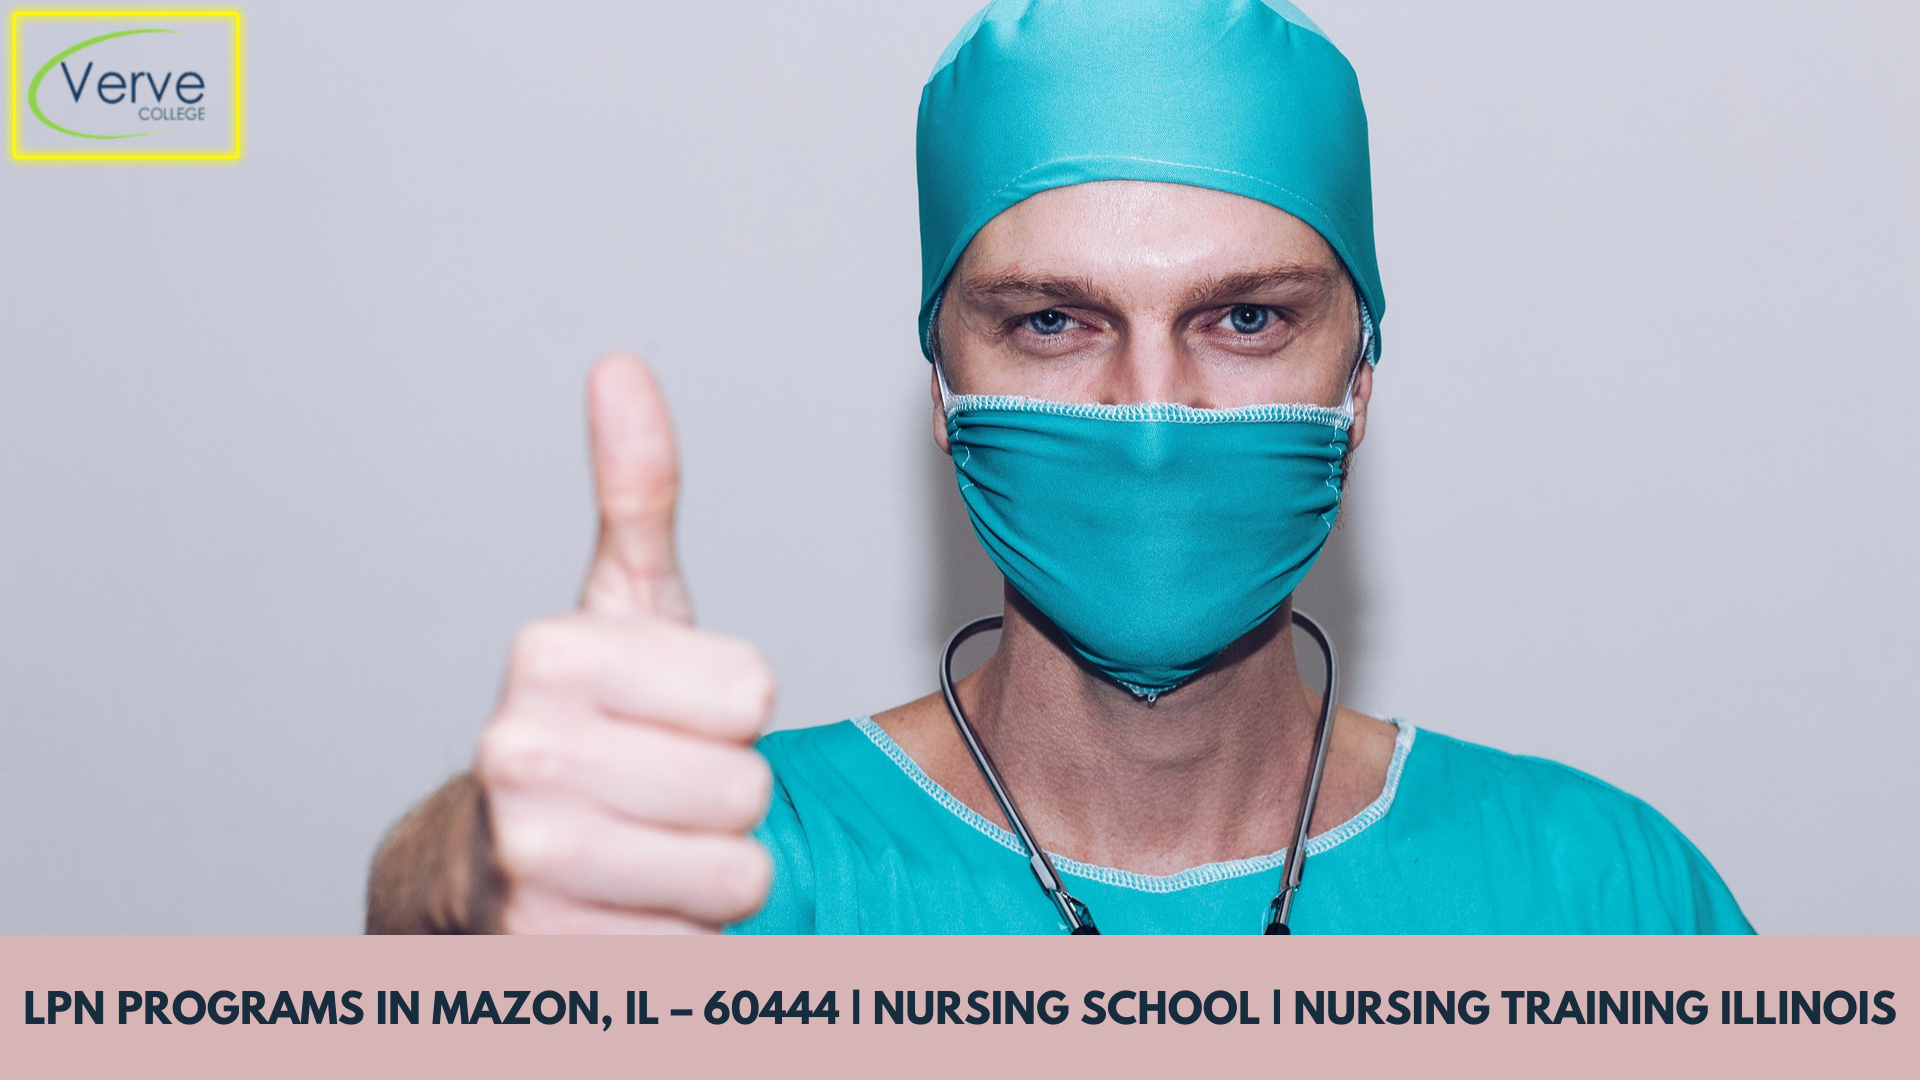 LPN Programs in Mazon, IL – 60444 | Nursing School | Nursing Training Illinois